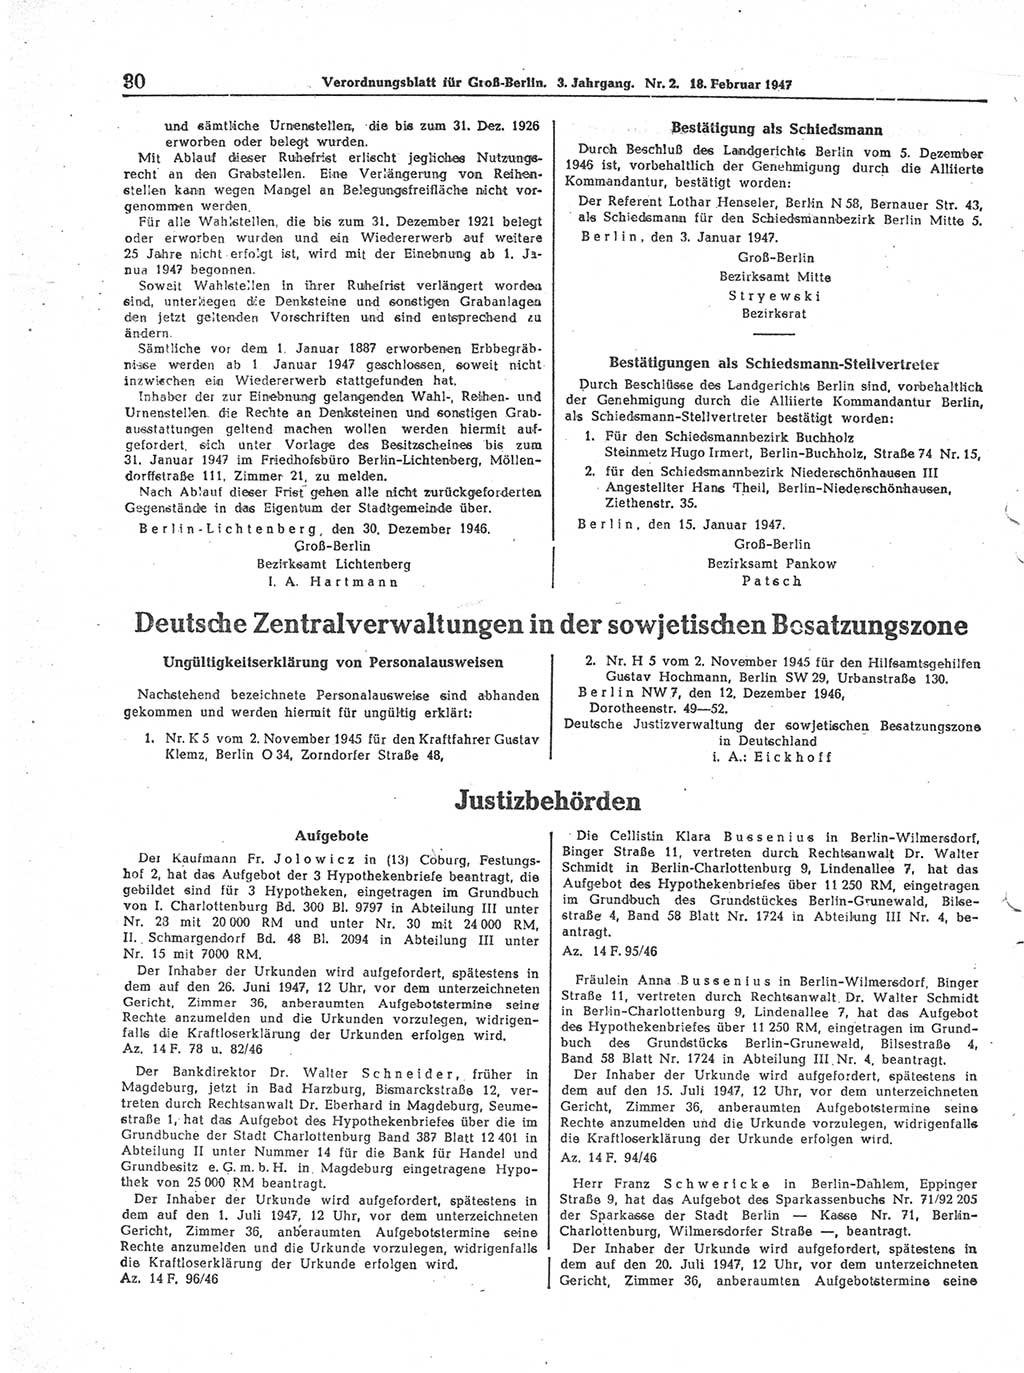 Verordnungsblatt (VOBl.) für Groß-Berlin 1947, Seite 30 (VOBl. Bln. 1947, S. 30)